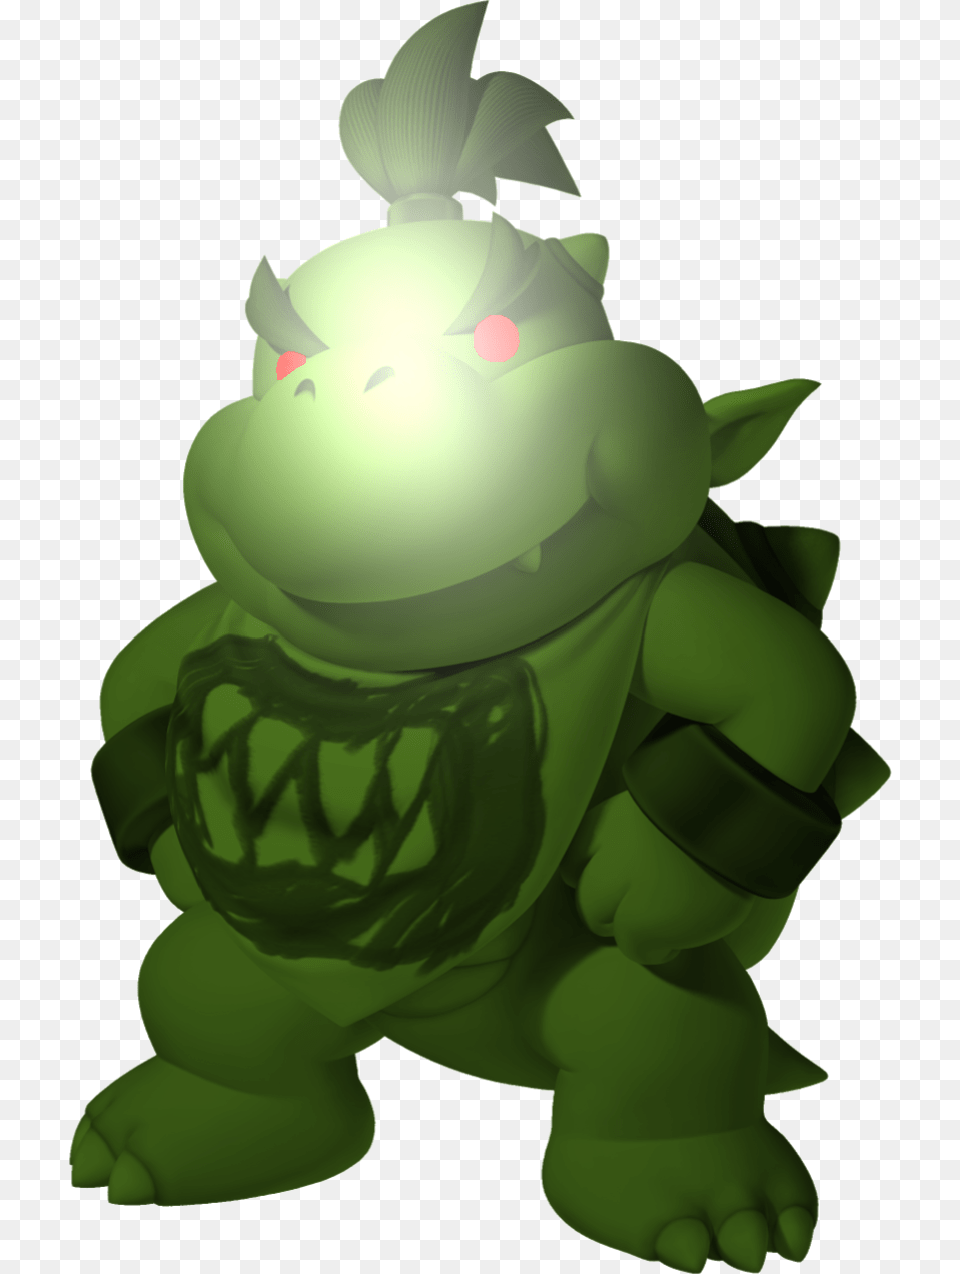 Virtual Bowser Jr Mario Bros Bowser Jr, Green, Animal, Turtle, Tortoise Png Image